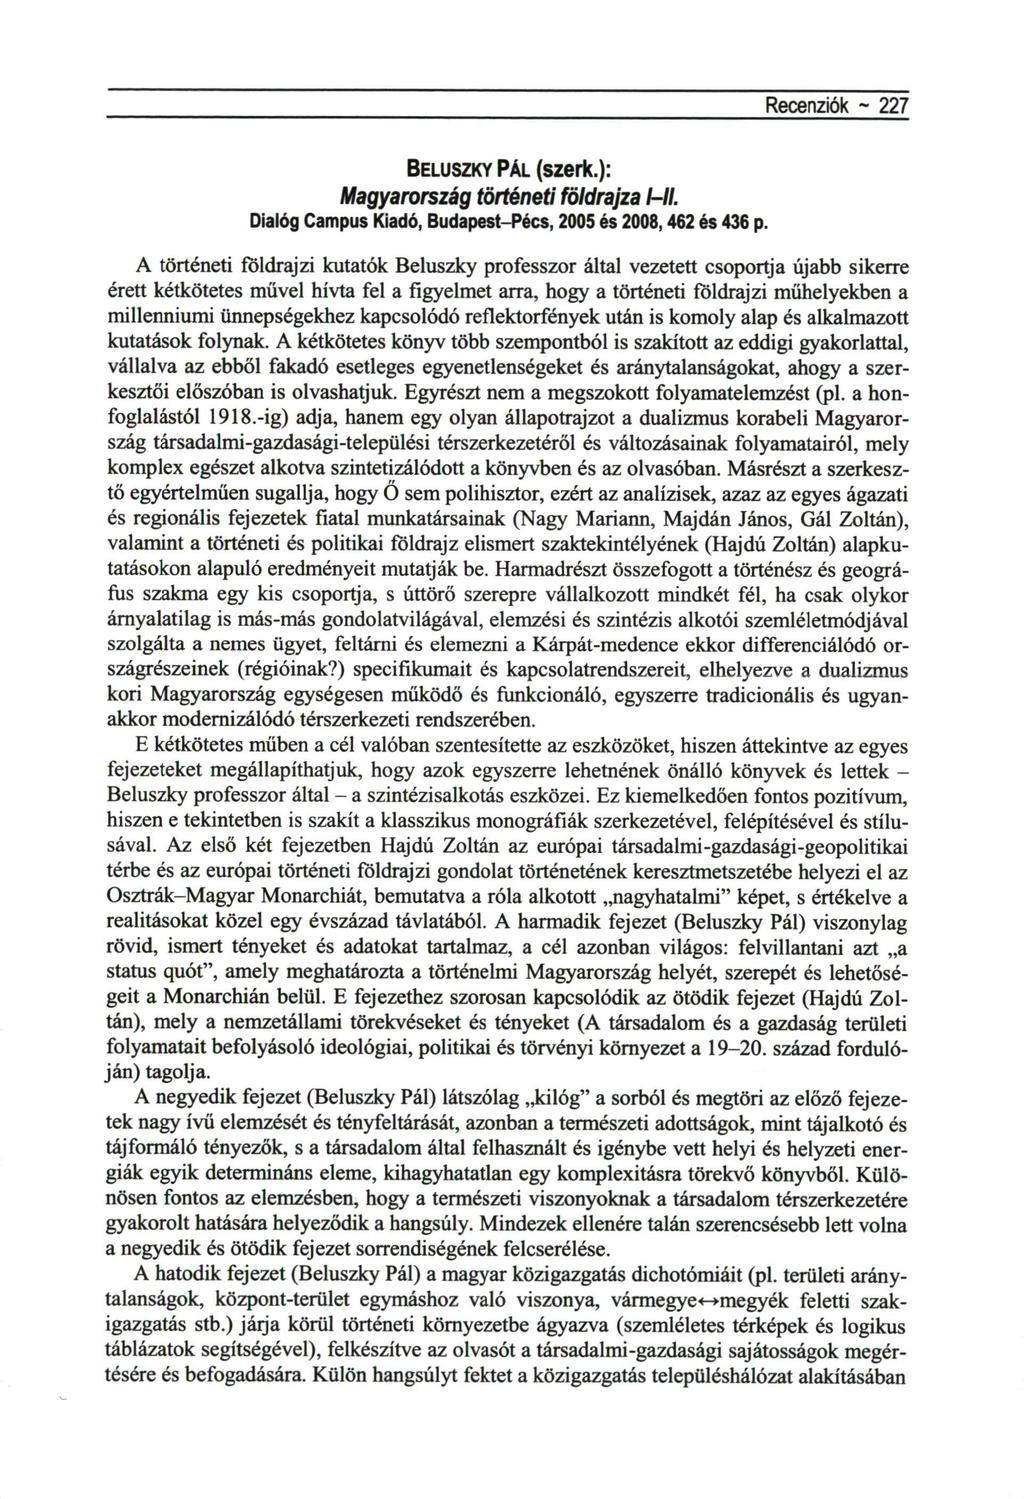 Recenziók - 227 BELUSZKY PÁL ( s z e r k. ) : Magyarország történeti földrajza /-//. Dialóg Campus Kiadó, Budapest-Pécs, 2005 és 2008,462 és 436 p.